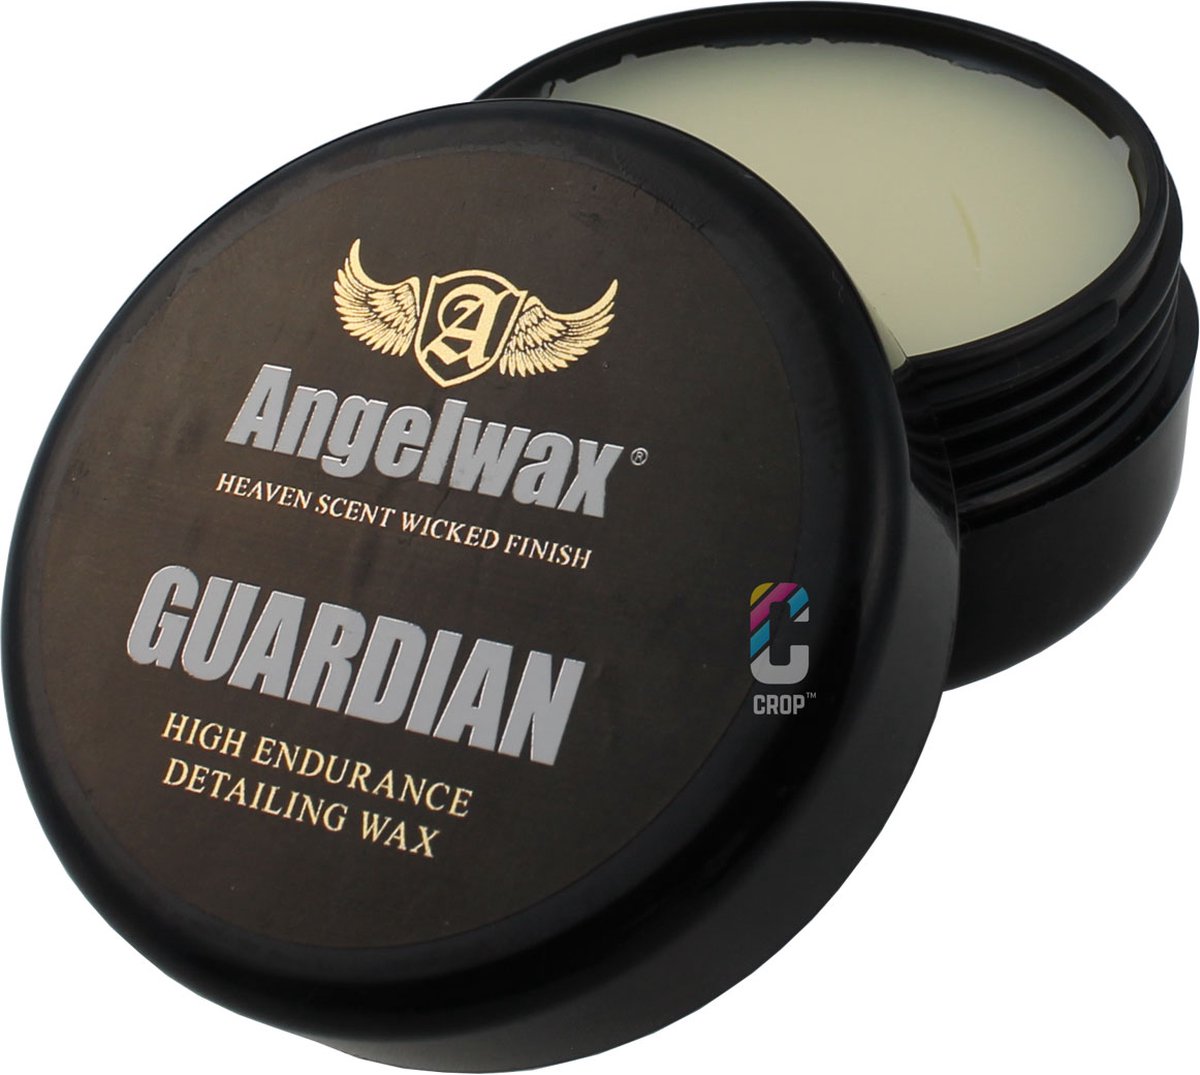 Angelwax Guardian 250ml - Endurance paste wax - carnauba wax - Angelwax meest duurzame wax aan u aanbieden welke uw voertuig minimaal een bescherming van meer dan 6 maanden biedt.